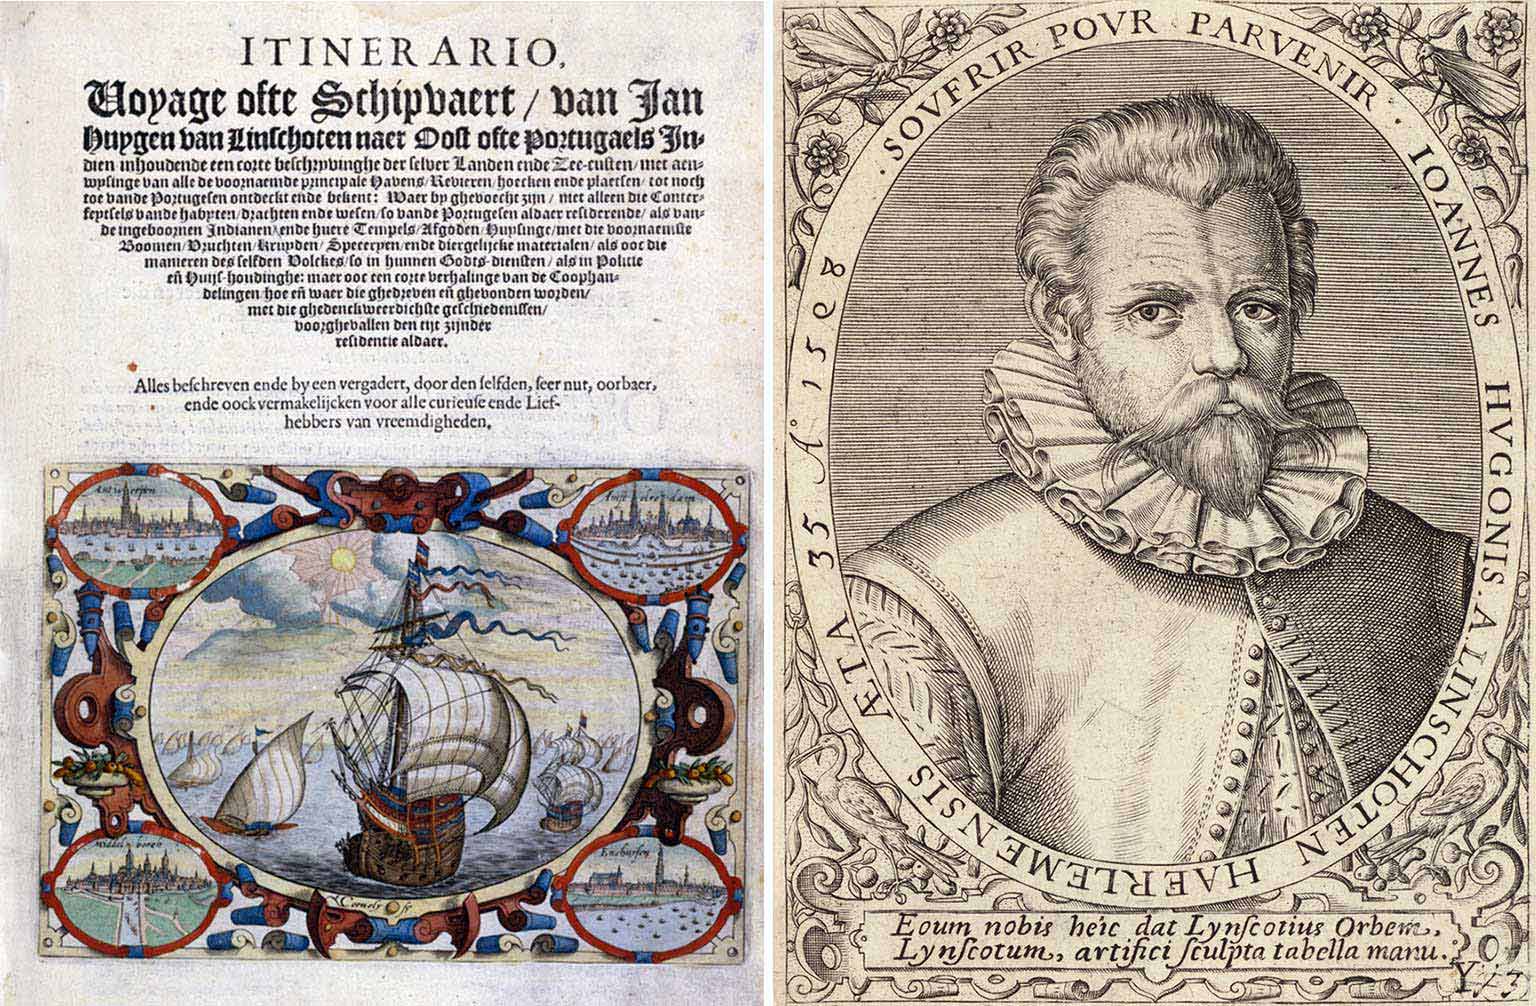 Eerste pagina uit de Itinerario en portret van Jan Huygen van Linschoten door Theodor de Bry